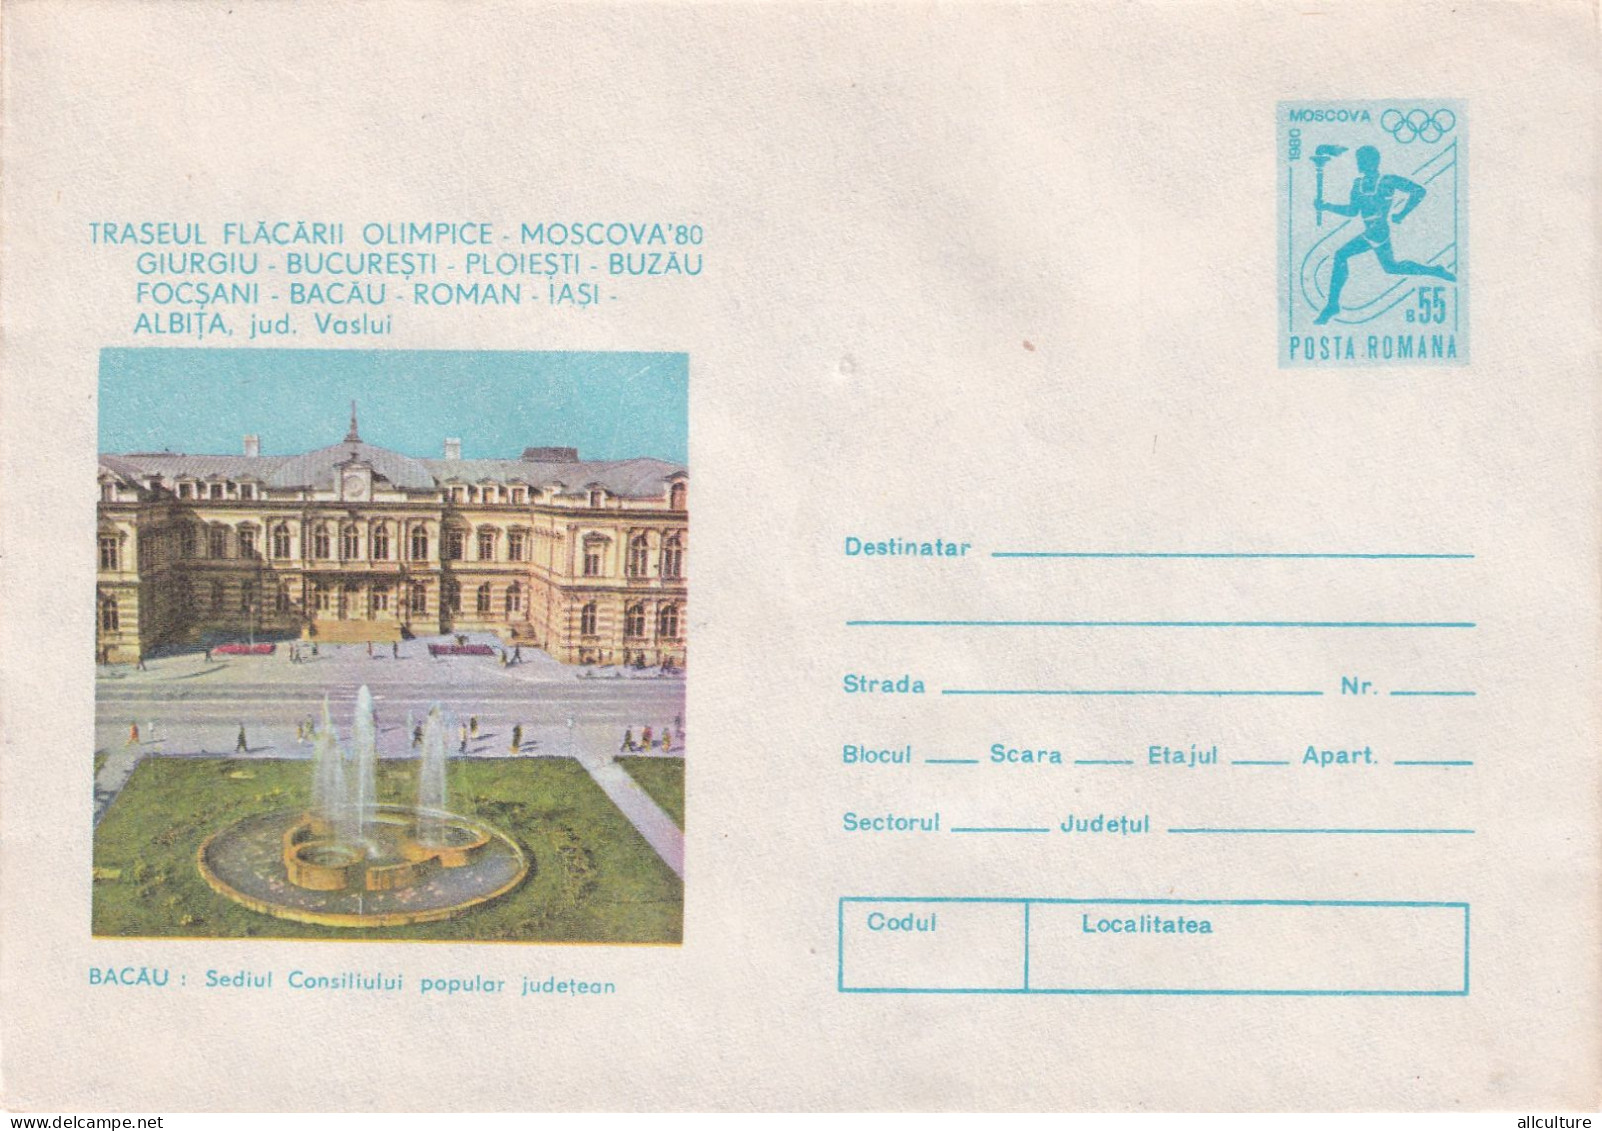 A24571 - BACAU SEDIUL CONSILIULUI POPULAR JUDETEAN  Cover Stationery Romania 1969 - Interi Postali